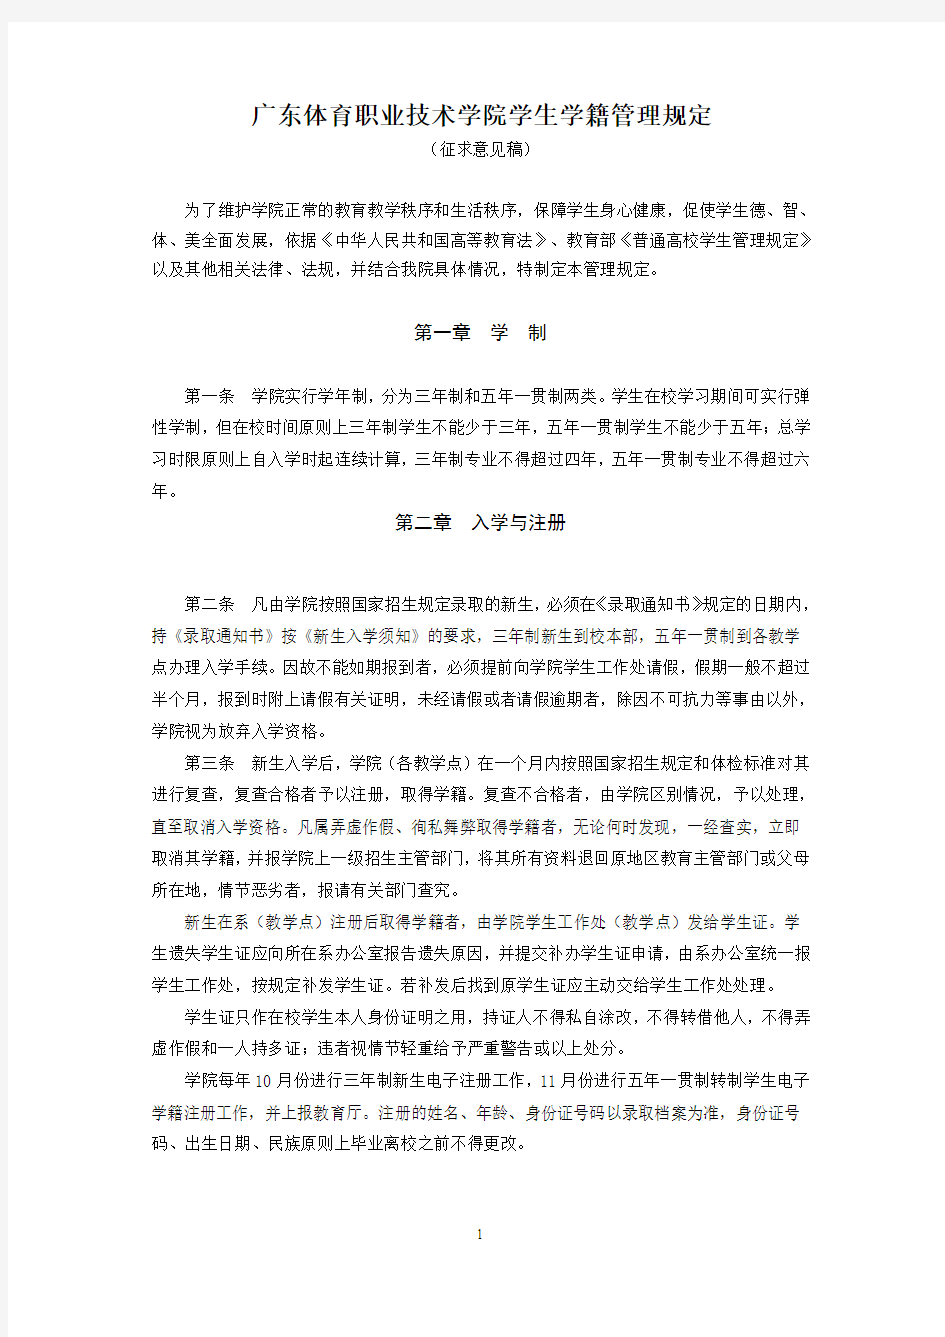 广东体育职业技术学院学生学籍管理规定